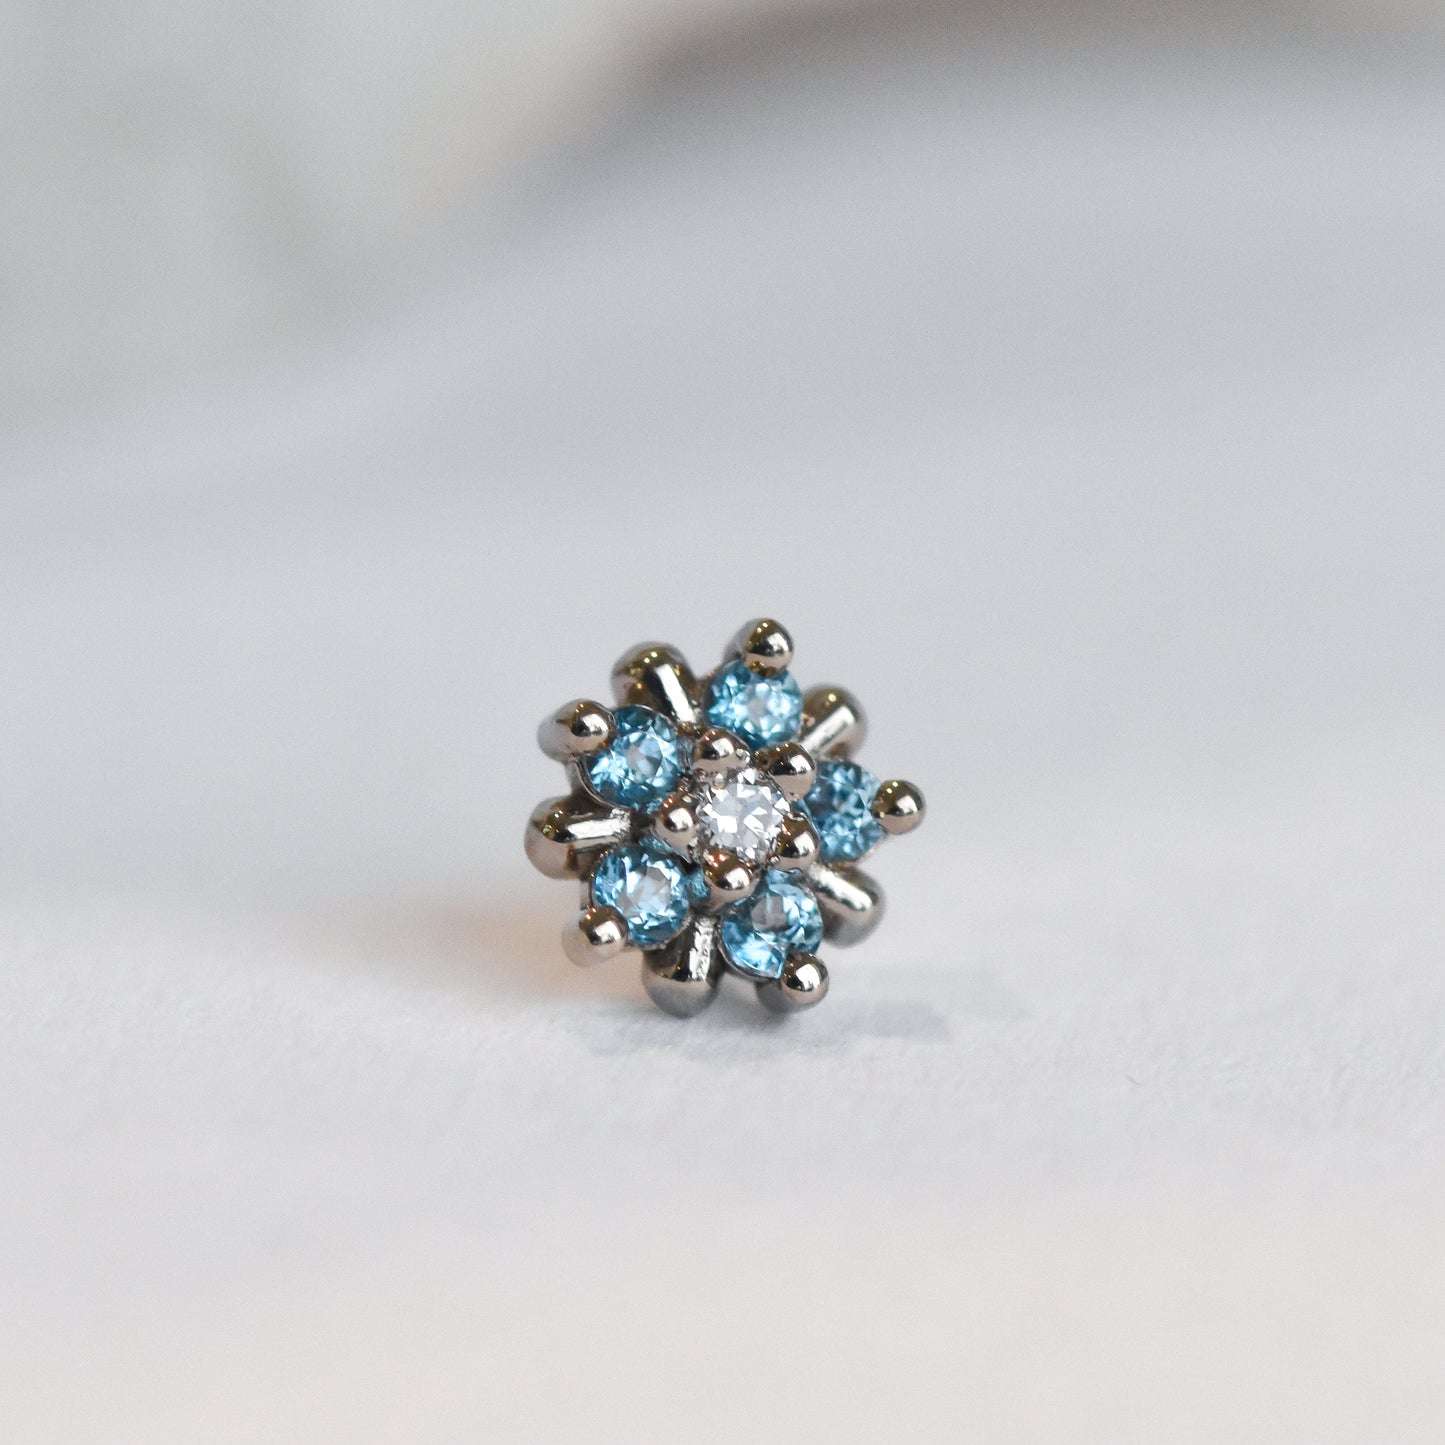 5mm Arya Star - Genuine Diamond/Ice Blue Topaz - Pressure Fit End Only-body jewelry-Alchemy Adornment-